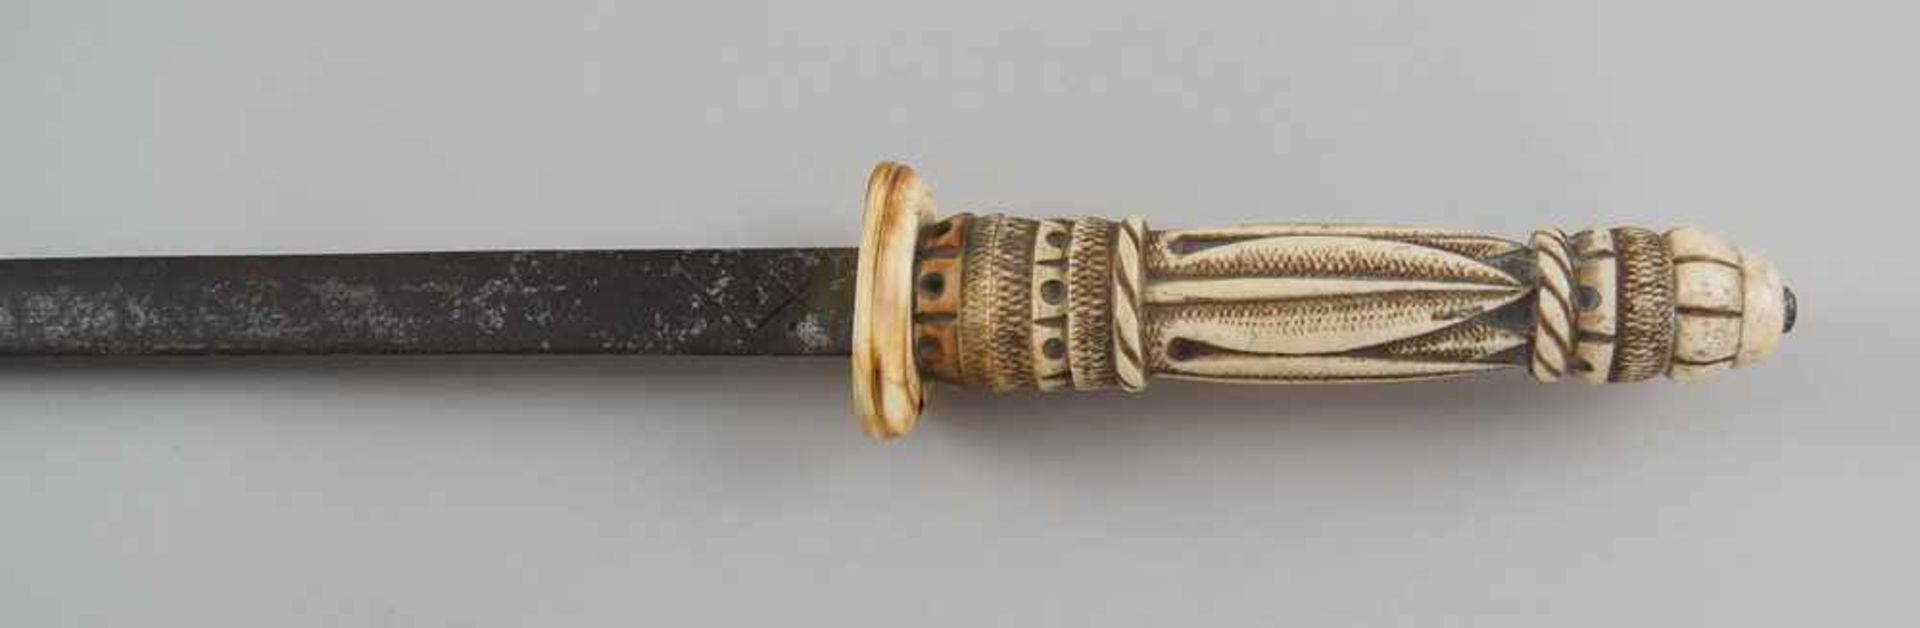 Schwert mit fein geschnitzter Scheide und Griff aus Elfenbein, Klinge aus Eisen, 19. JH,mit Zettel - Bild 3 aus 11